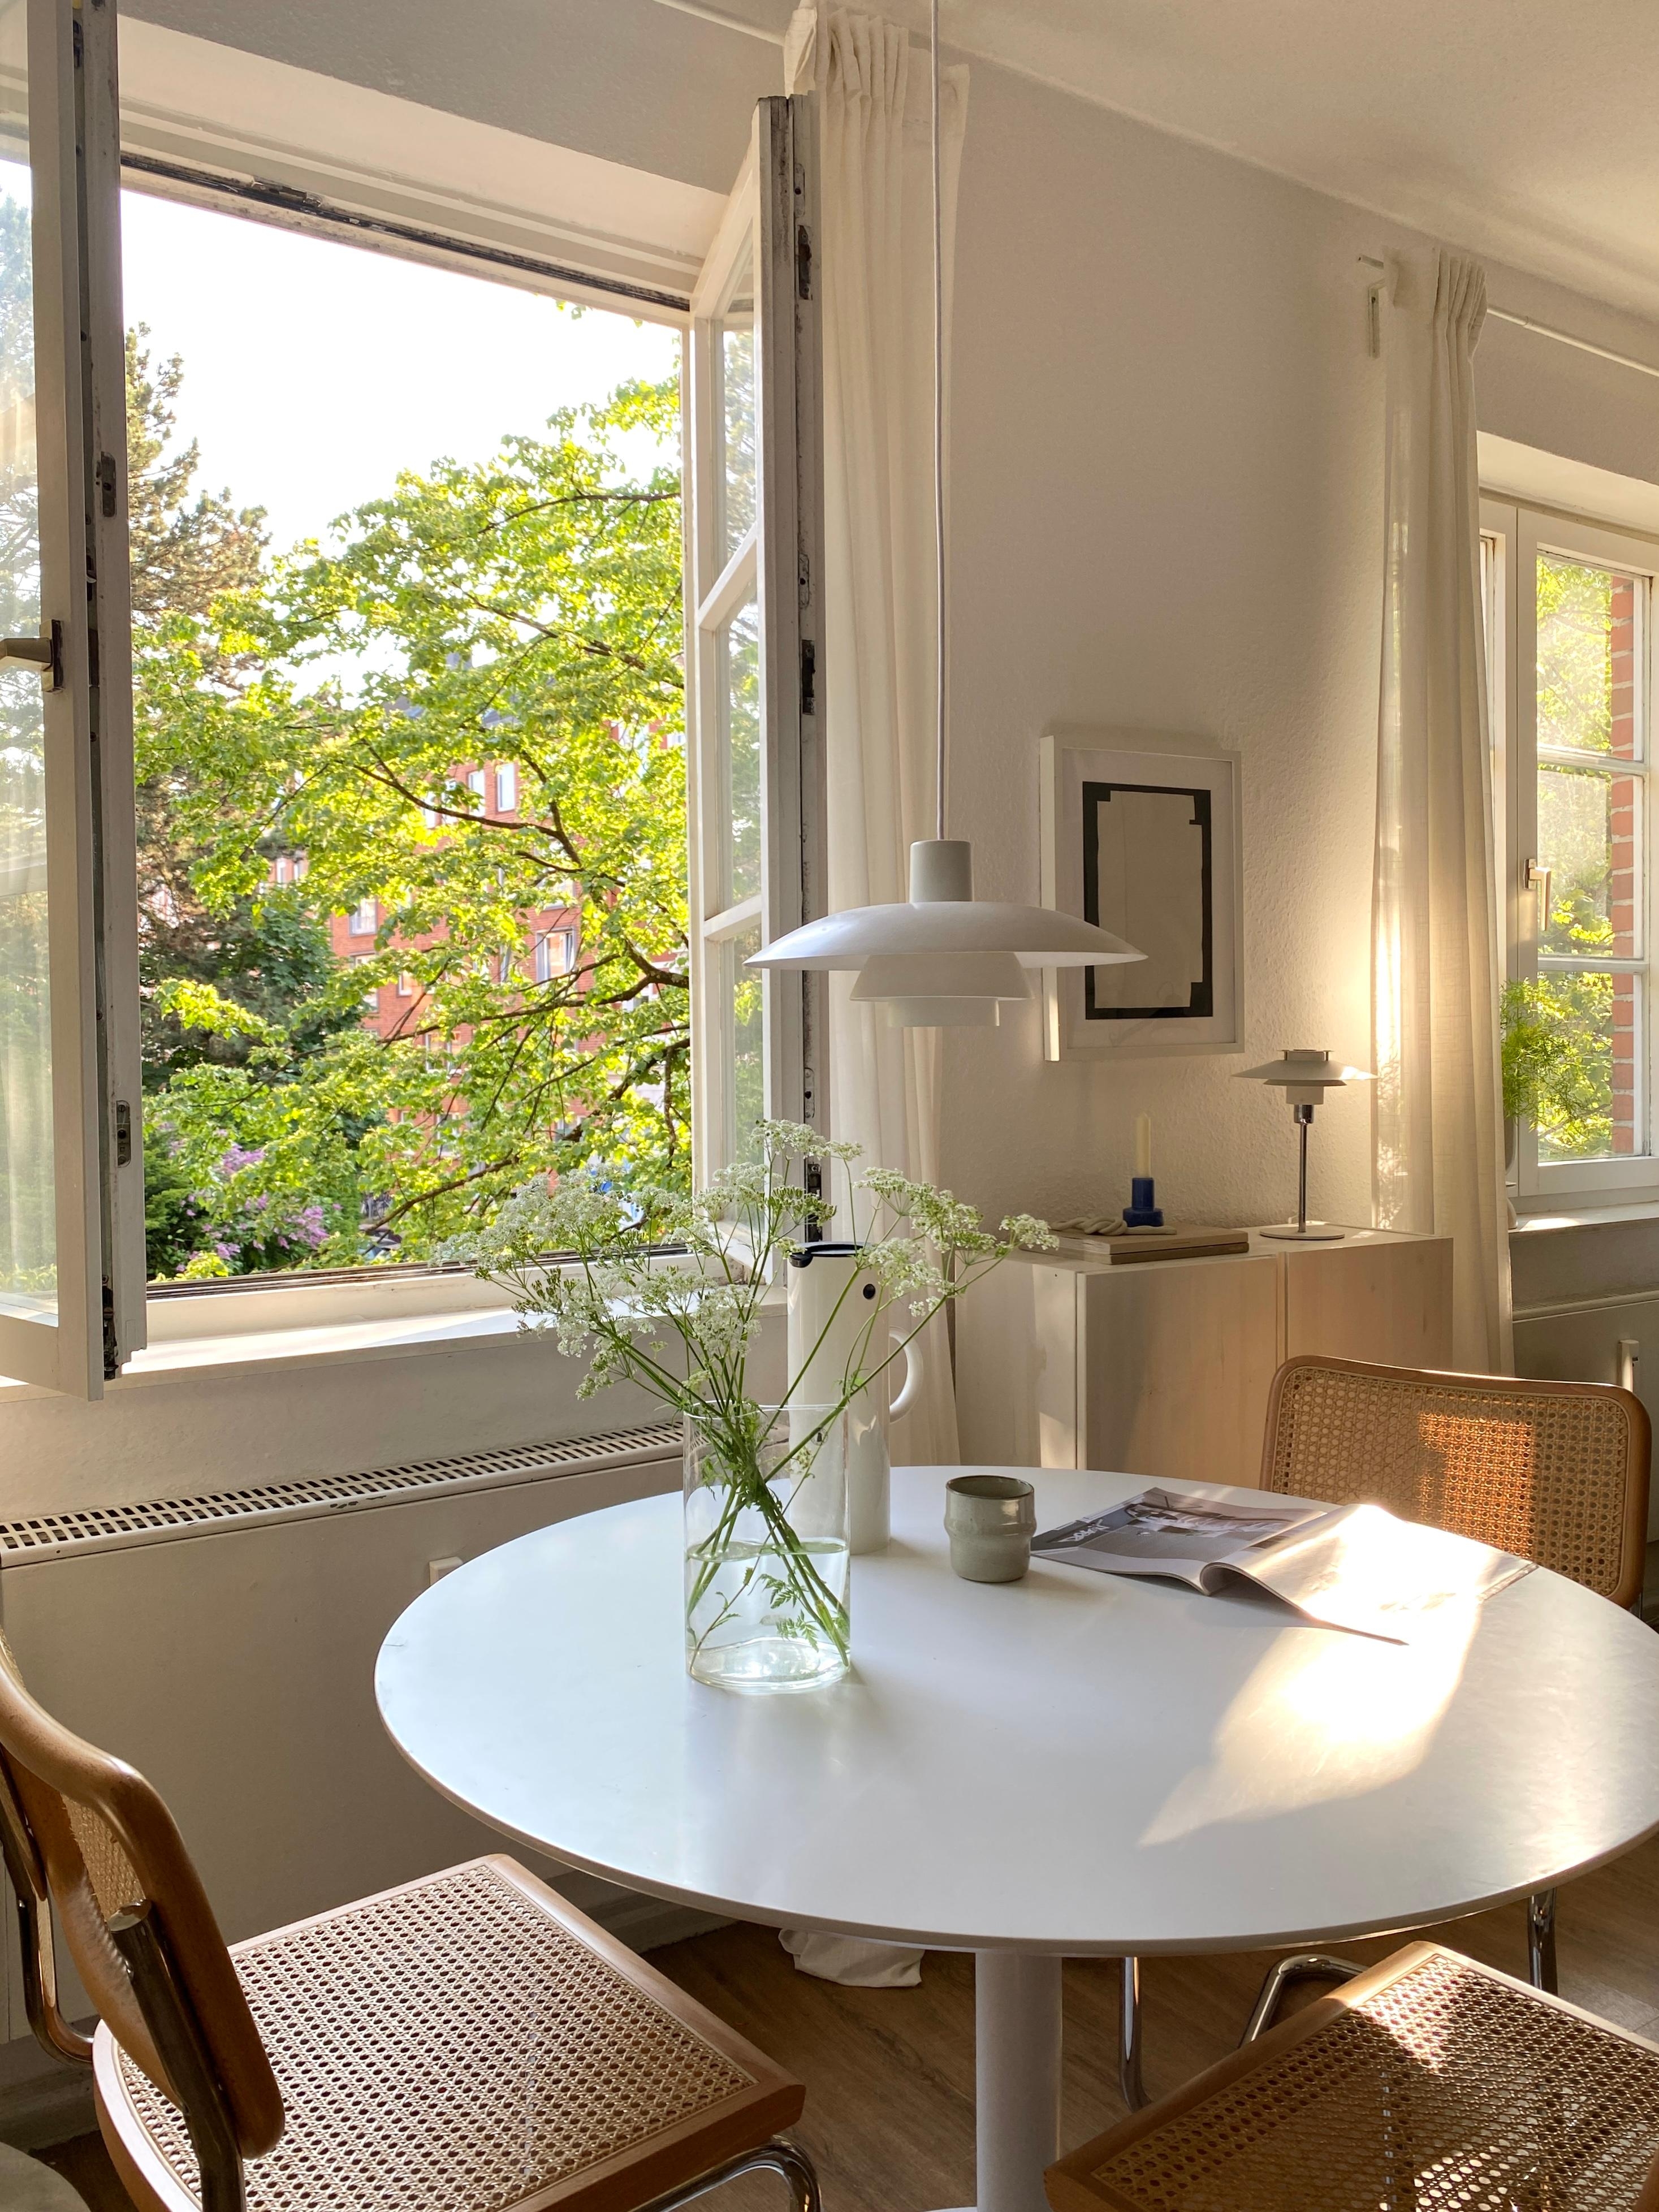 Wenn morgens die Sonne hineinscheint, ist dies der absolute Lieblingsplatz in der Wohnung 🌞 
#lieblingsplatz #skandi